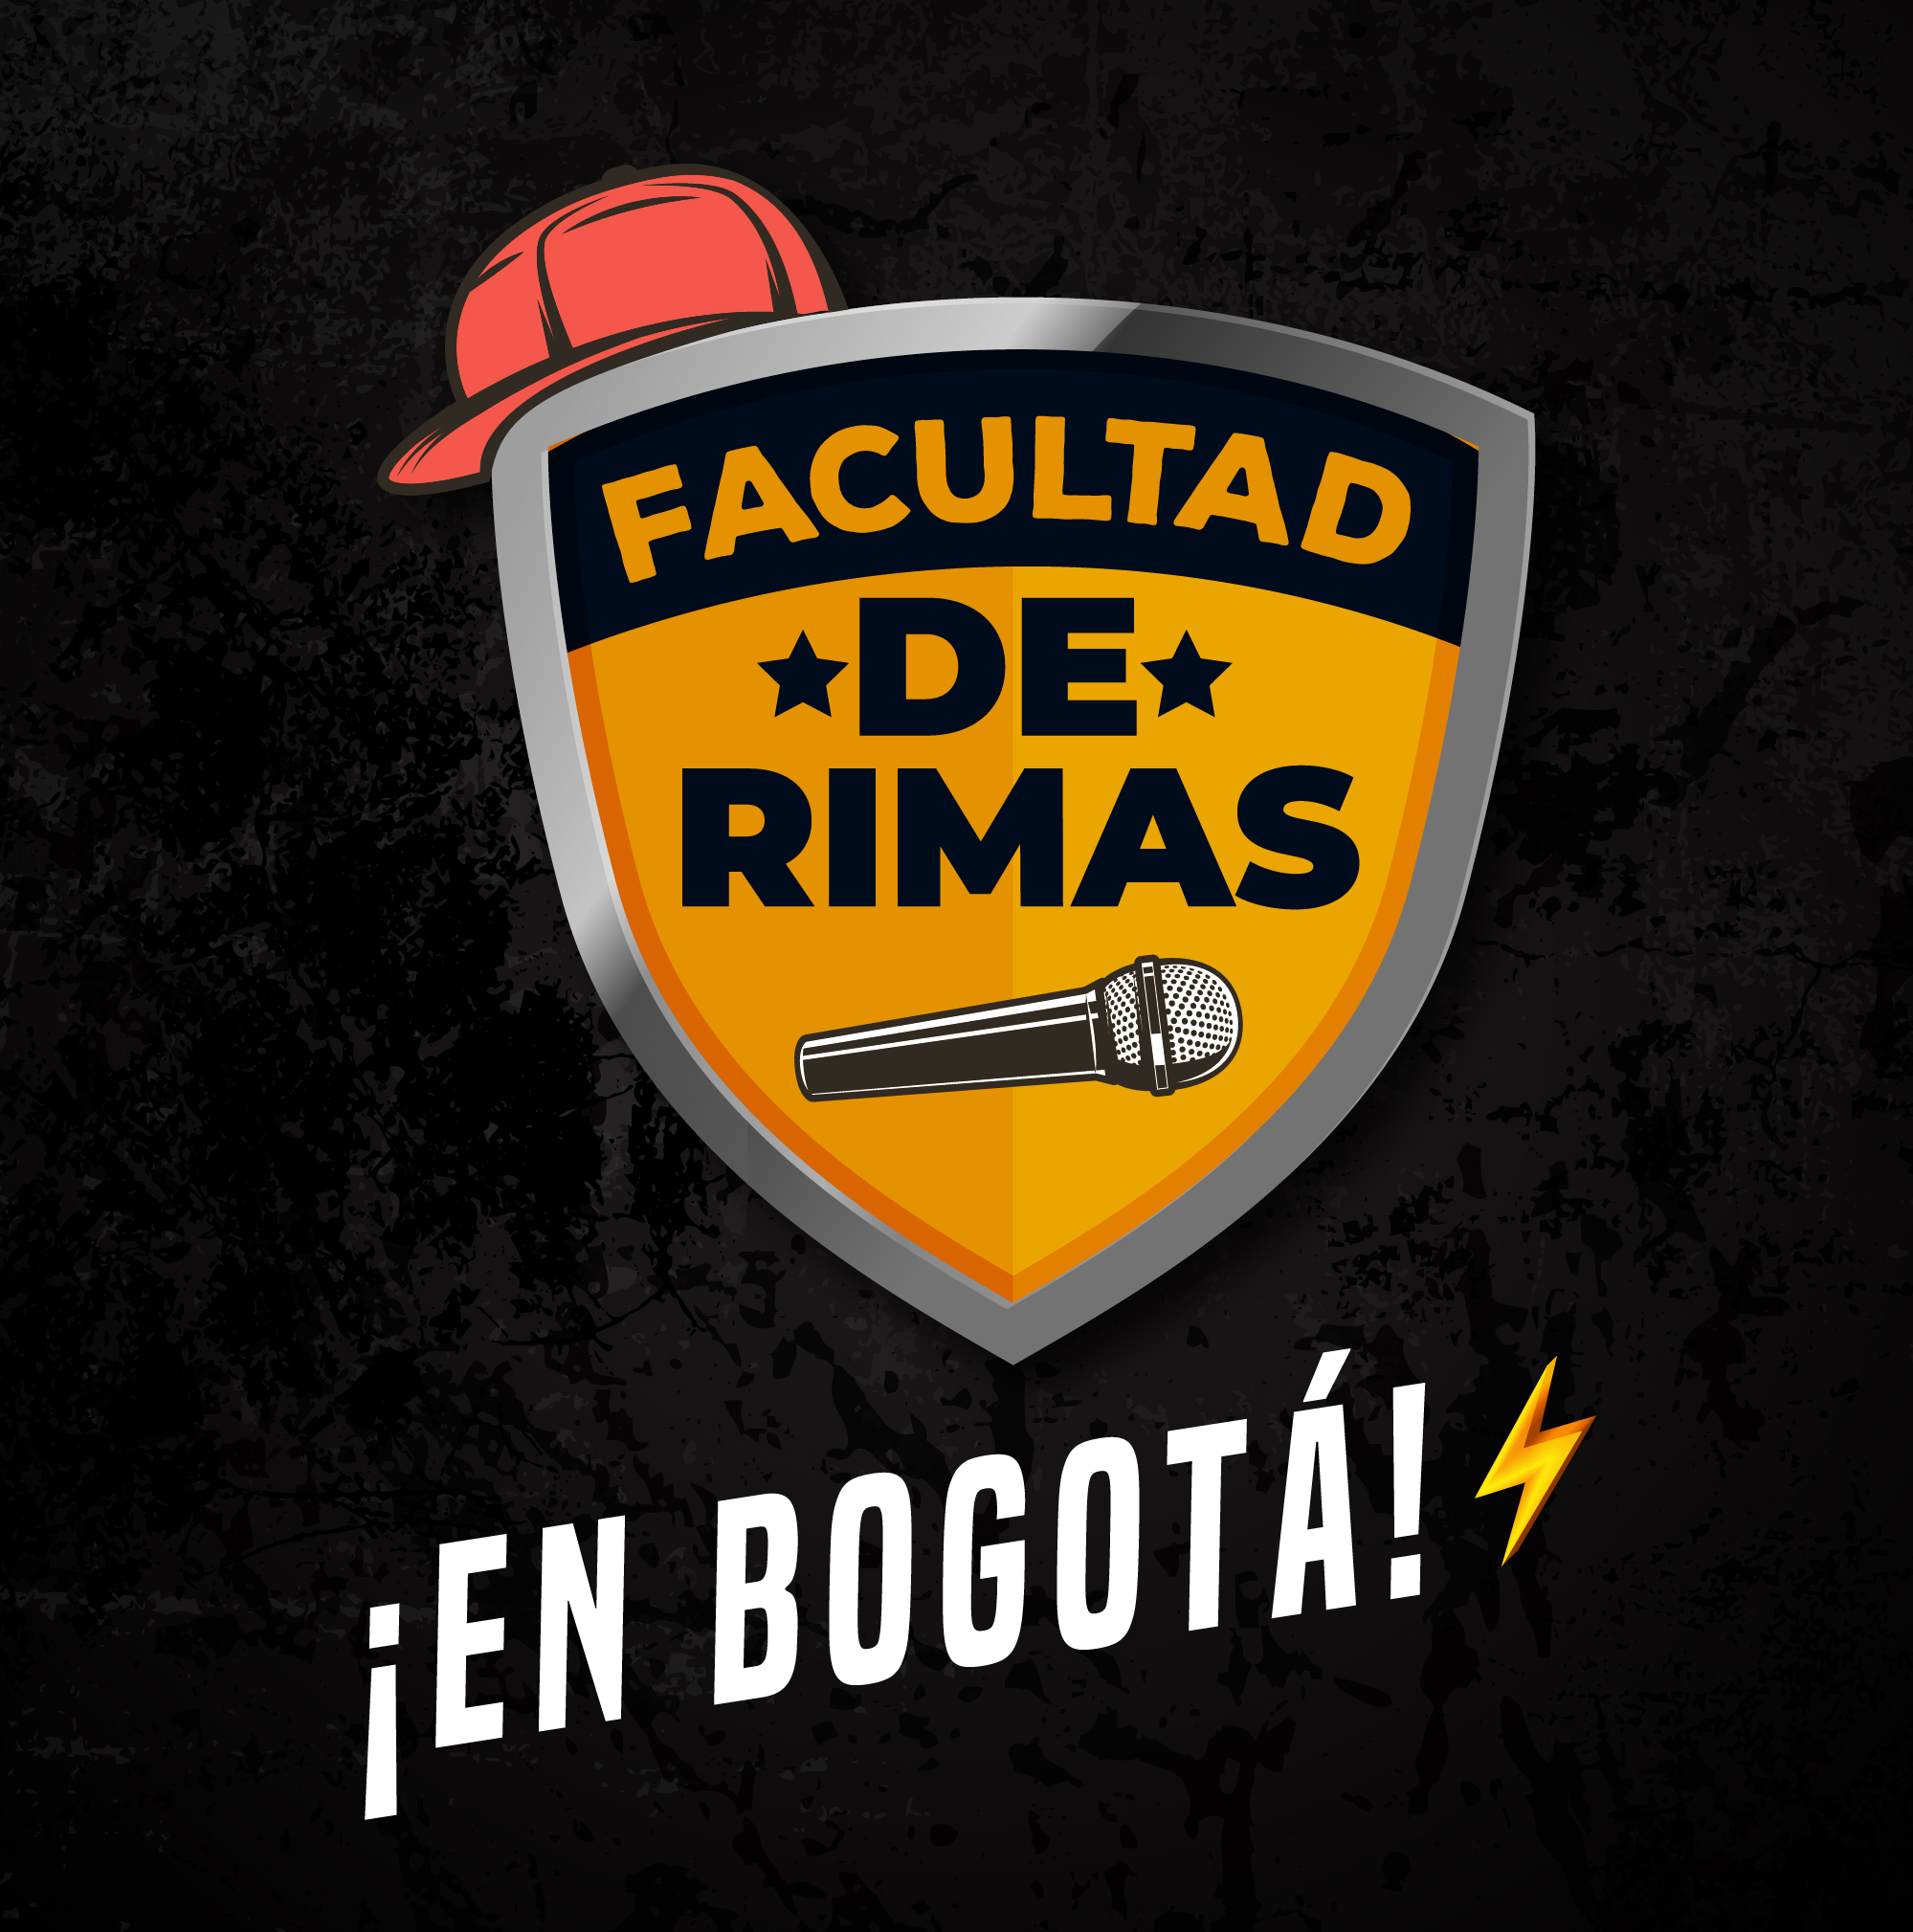 Facude Rimas en Bogot 05